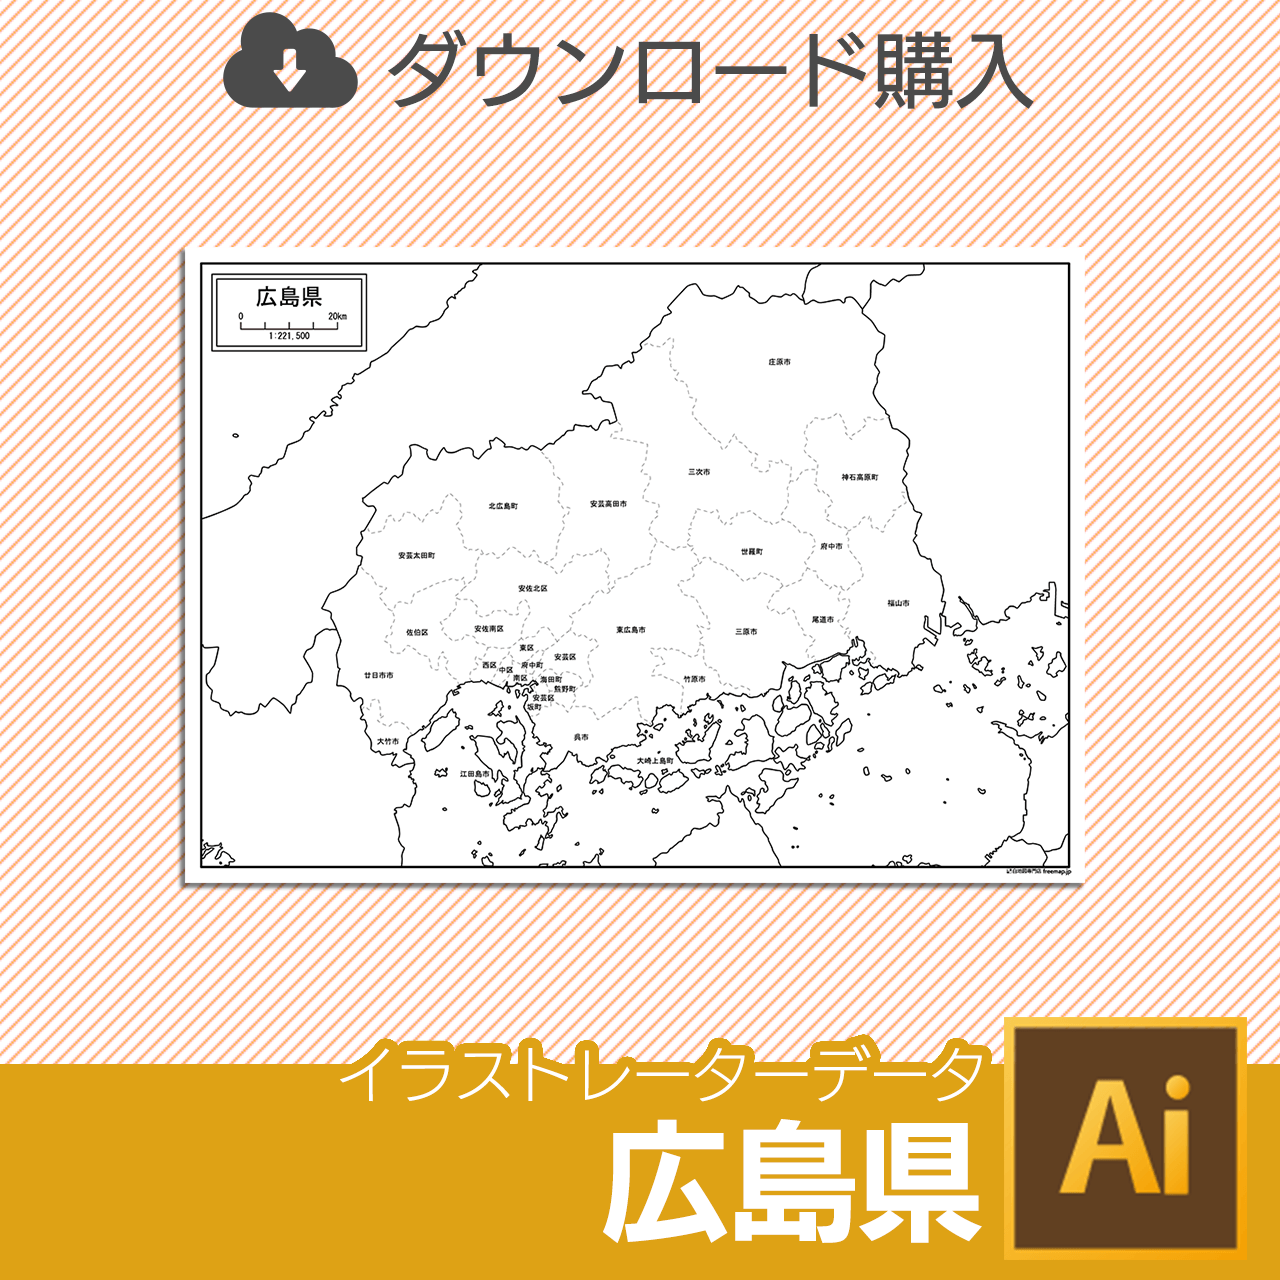 広島県のaiデータのサムネイル画像